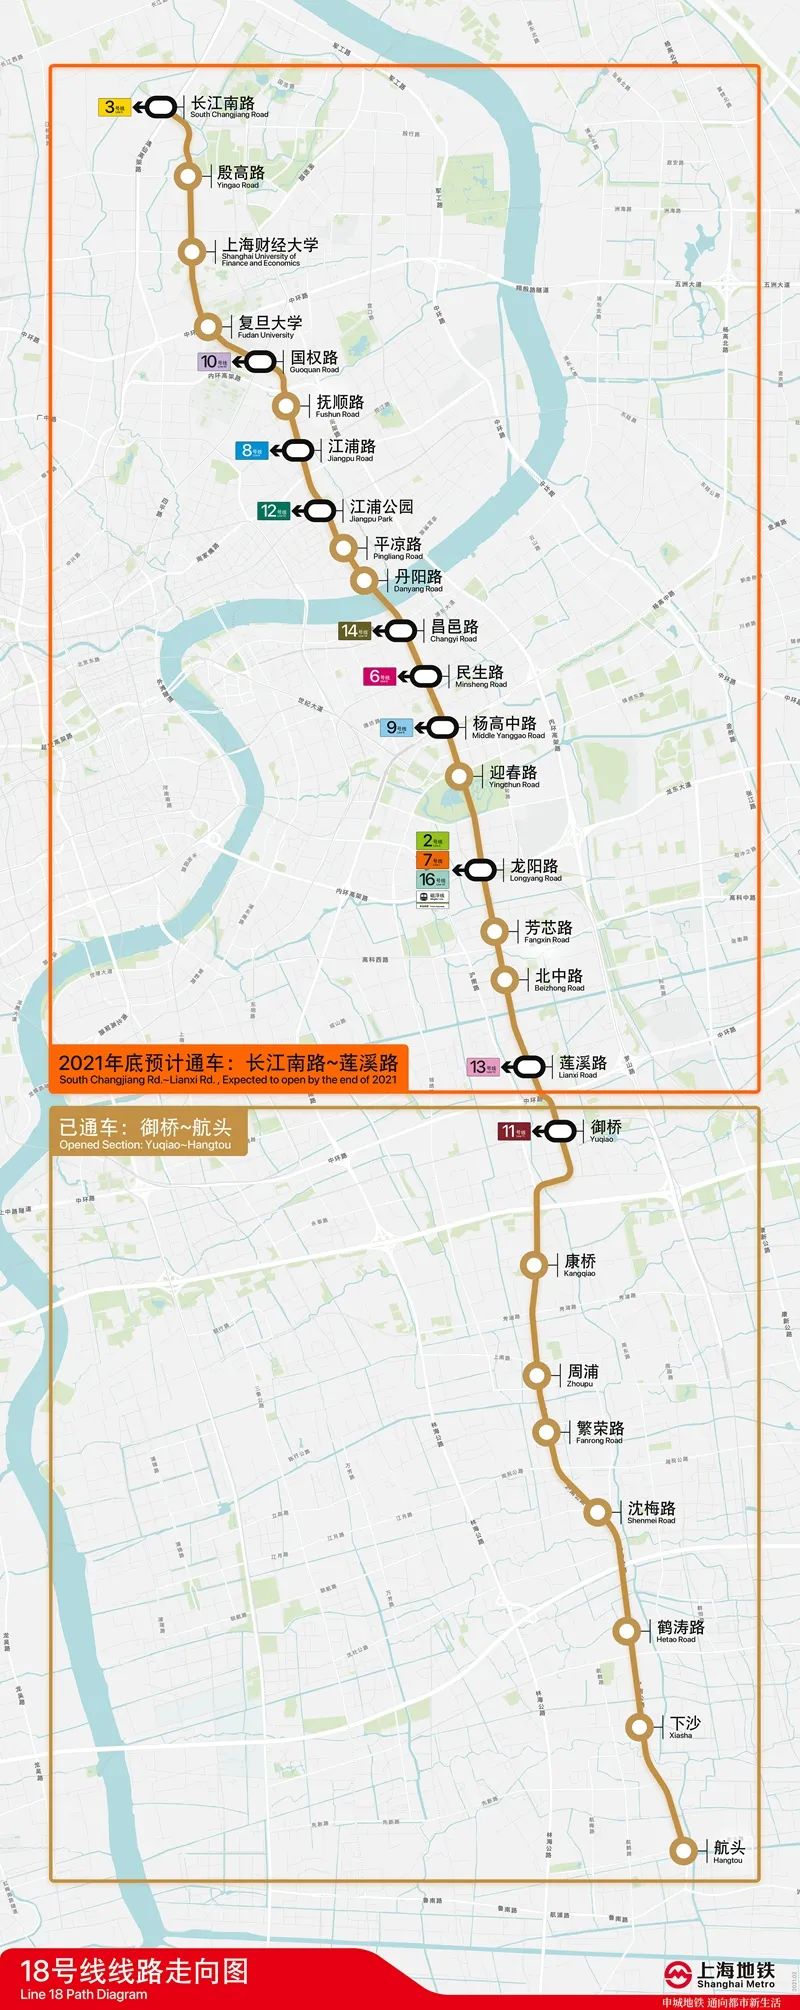 好消息!上海地铁18号线跑图试运行